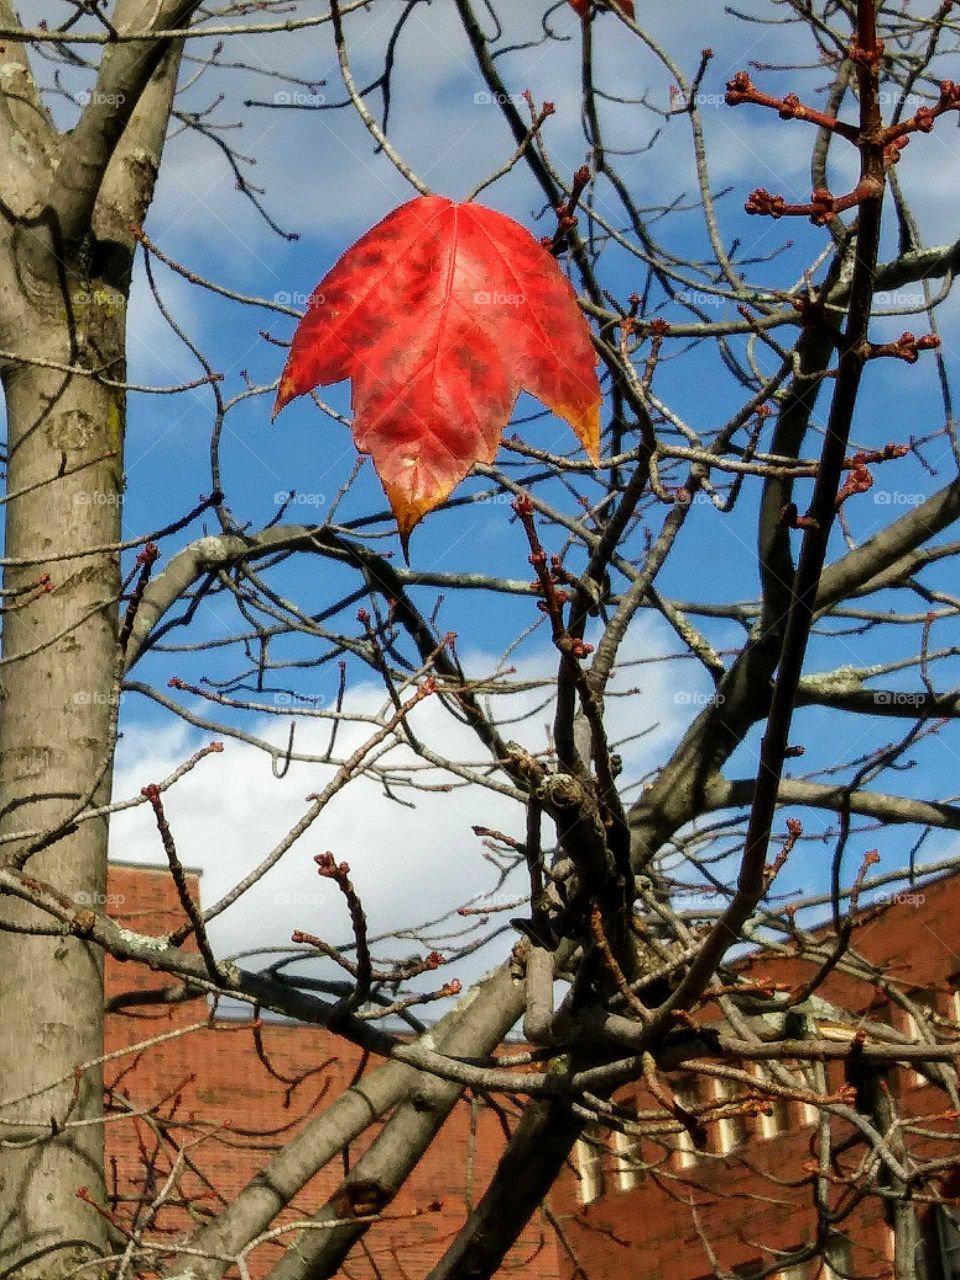 Hangin' on....last Autumn leaf on a tree